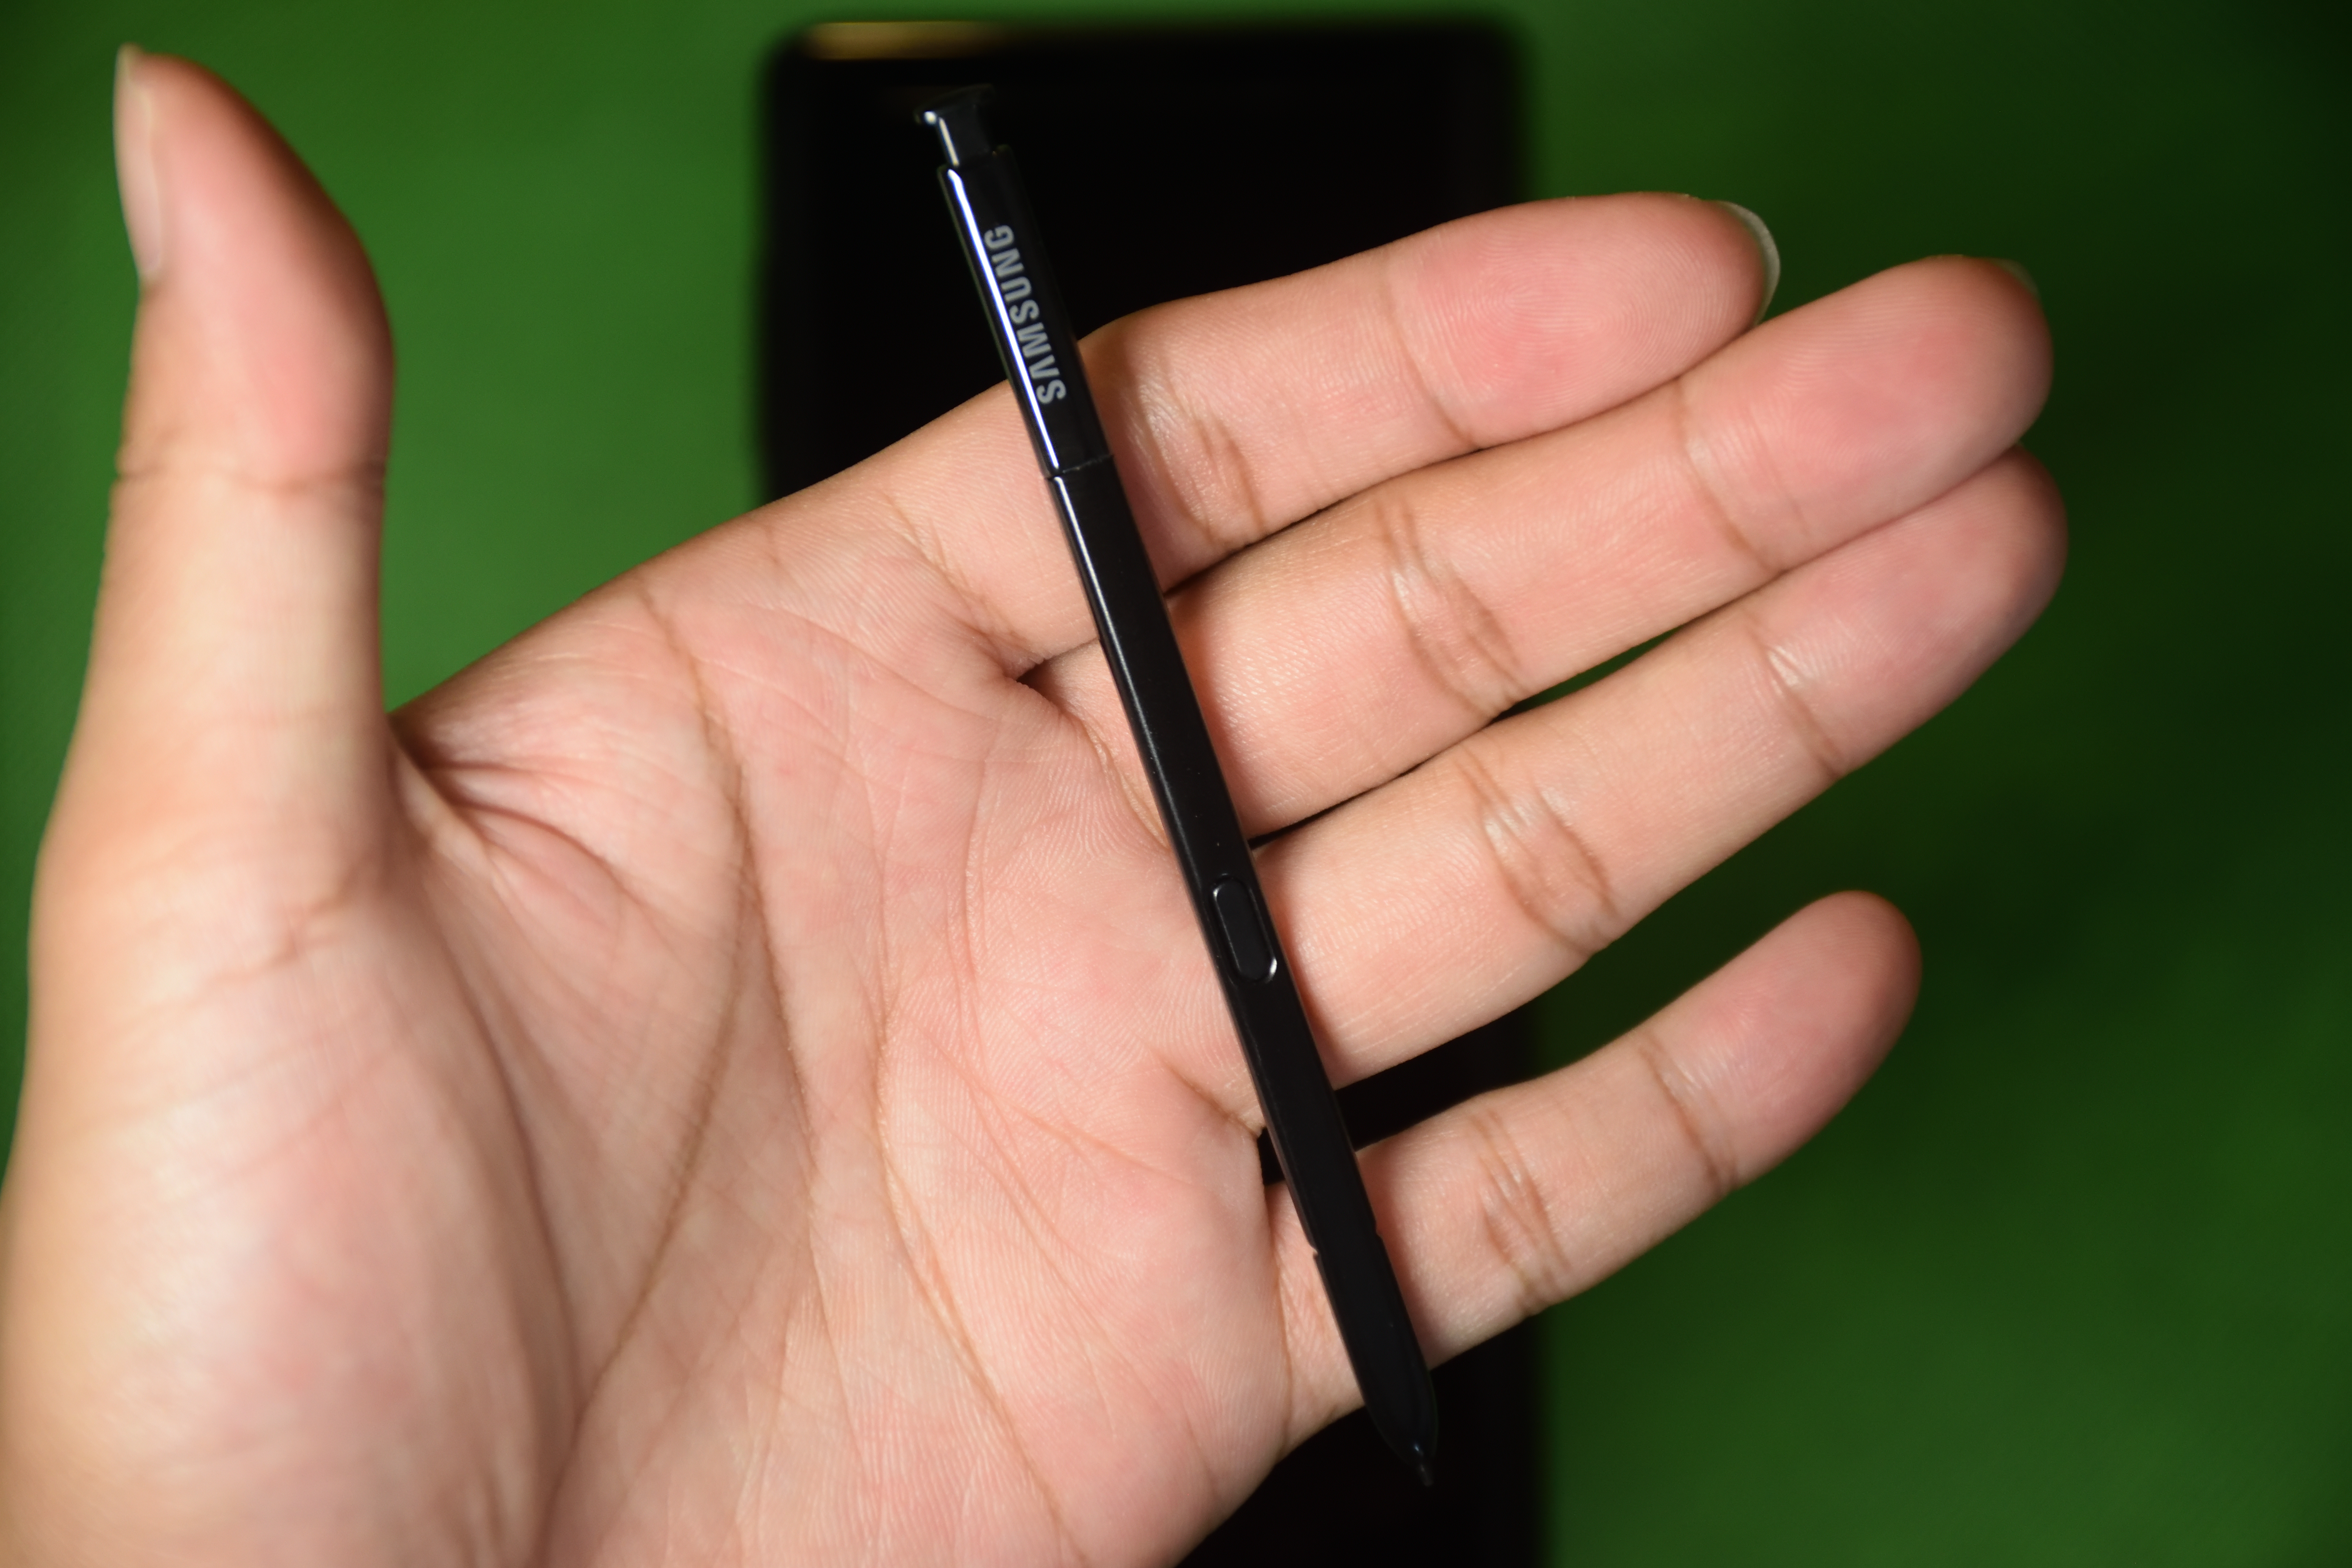 Samsung Galaxy Note 9 S-Pen